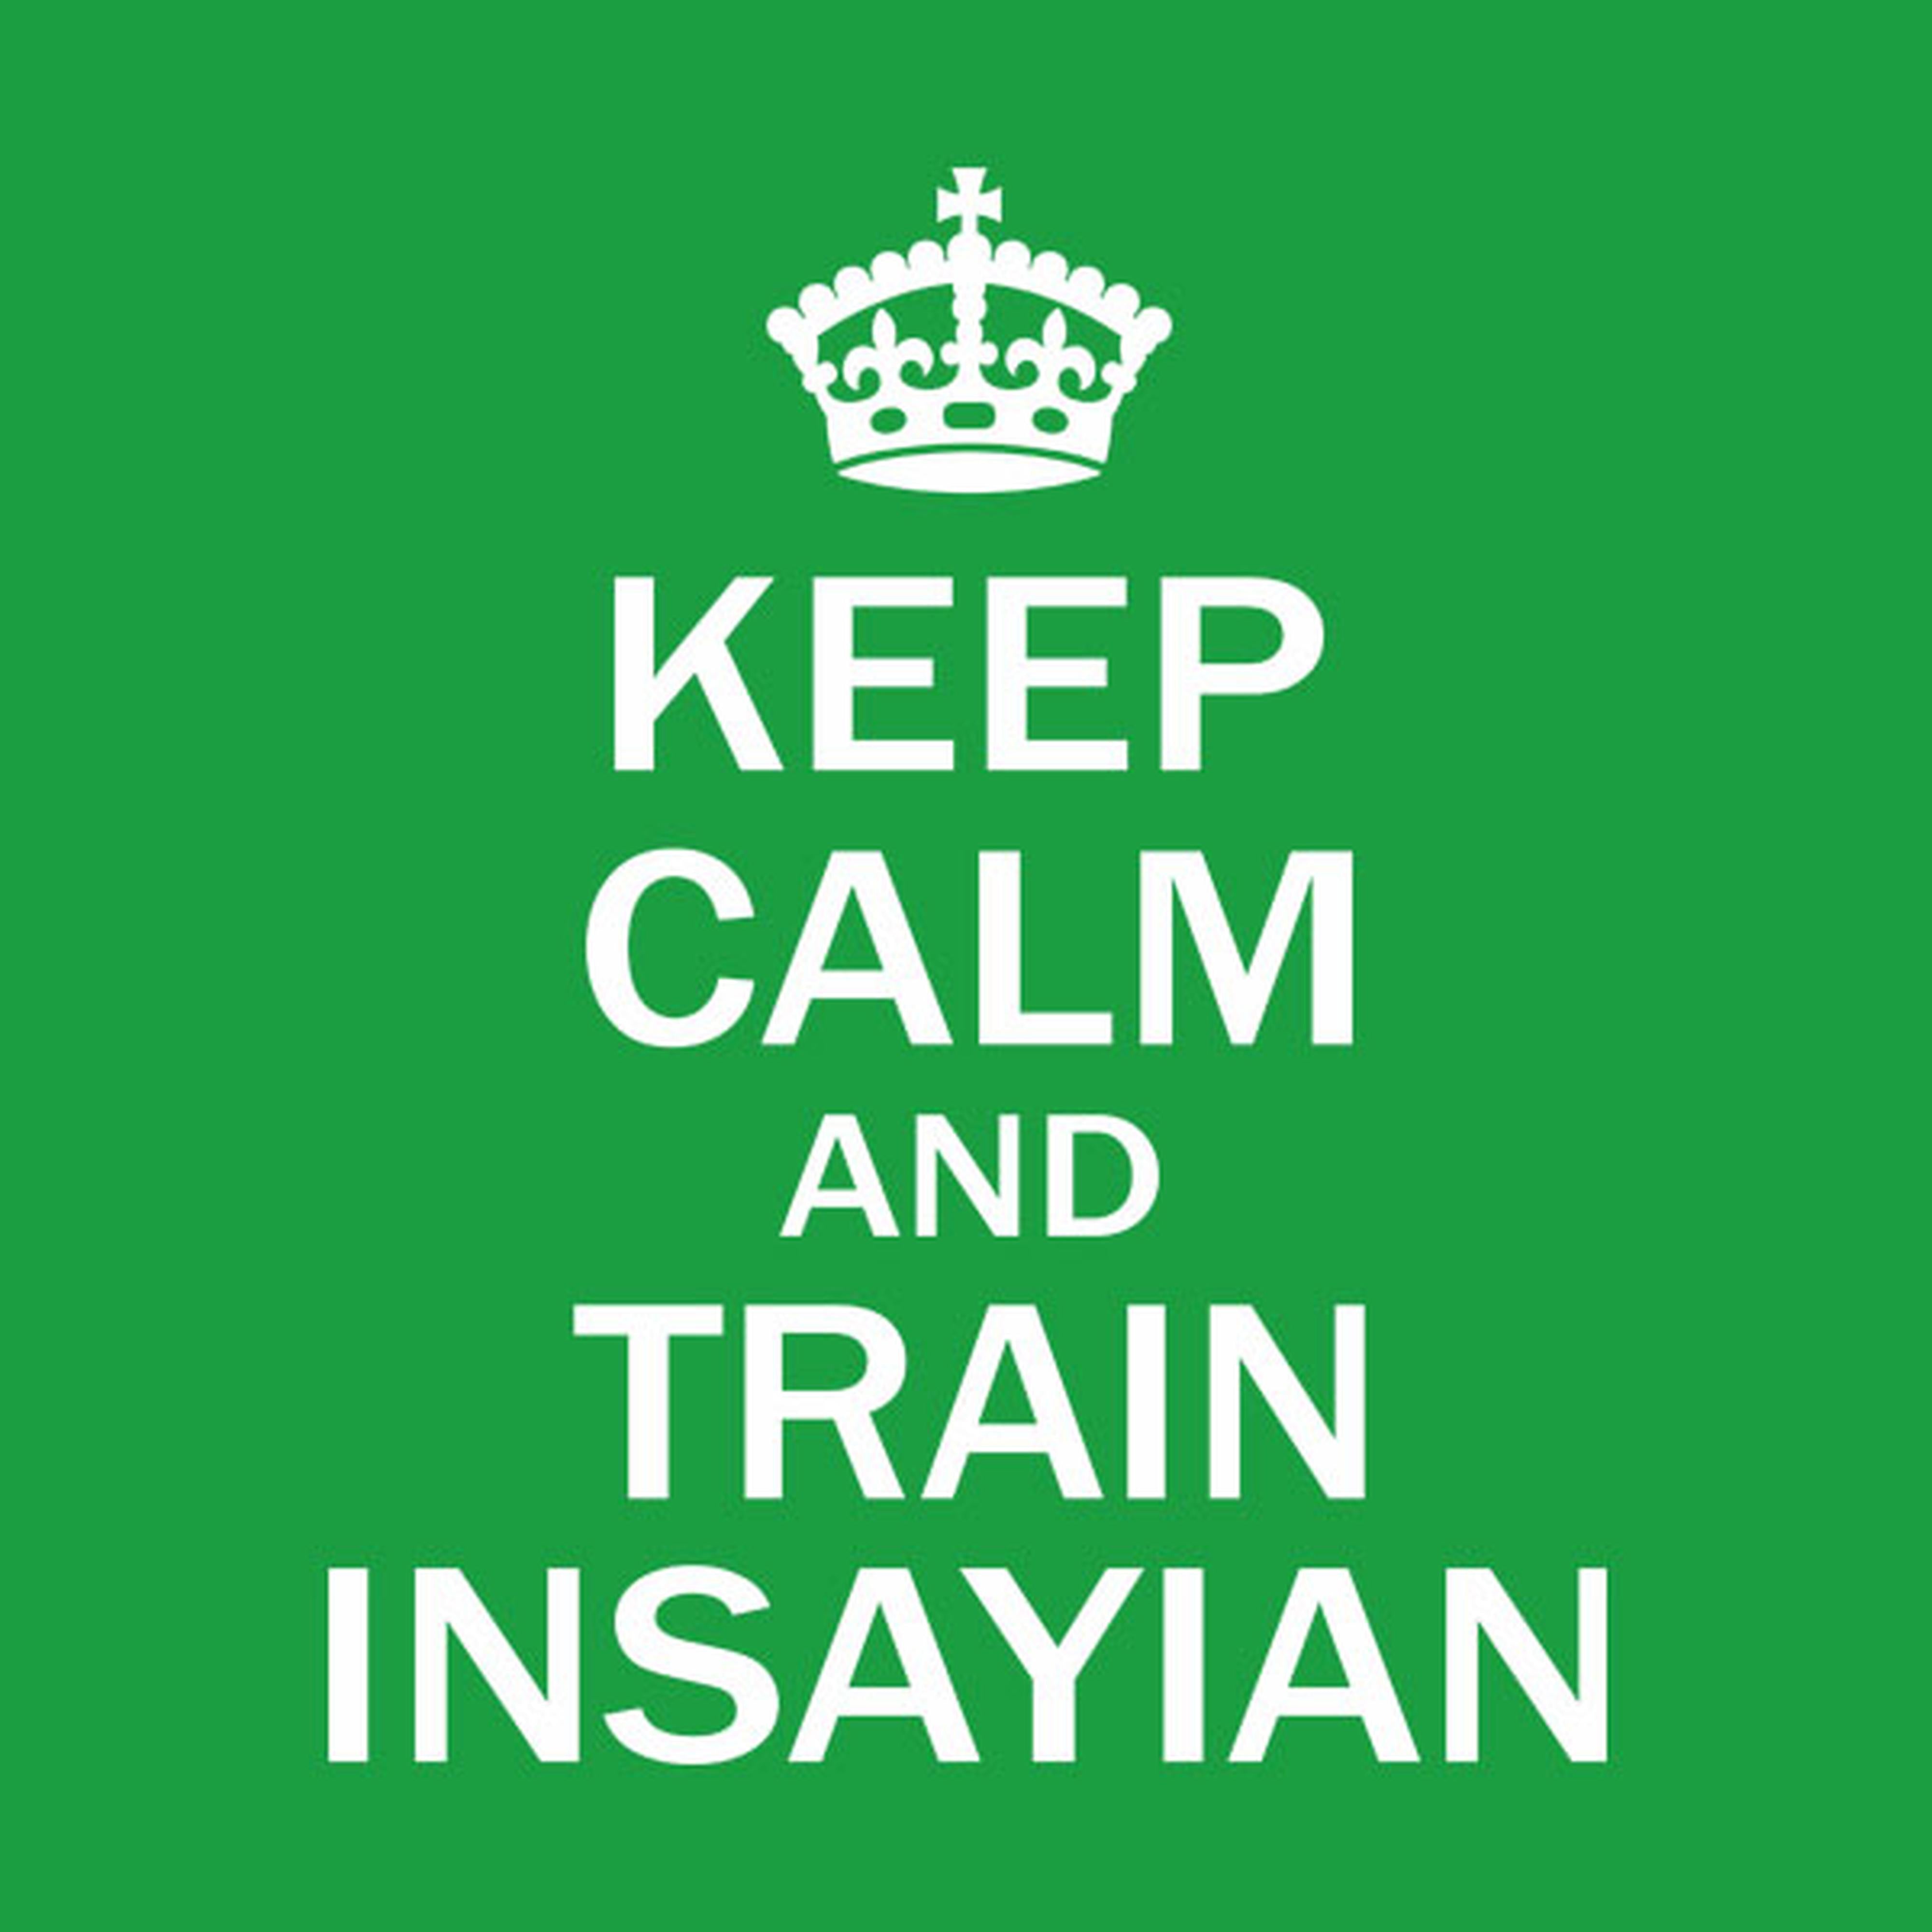 Keep calm and train insayan - T-shirt